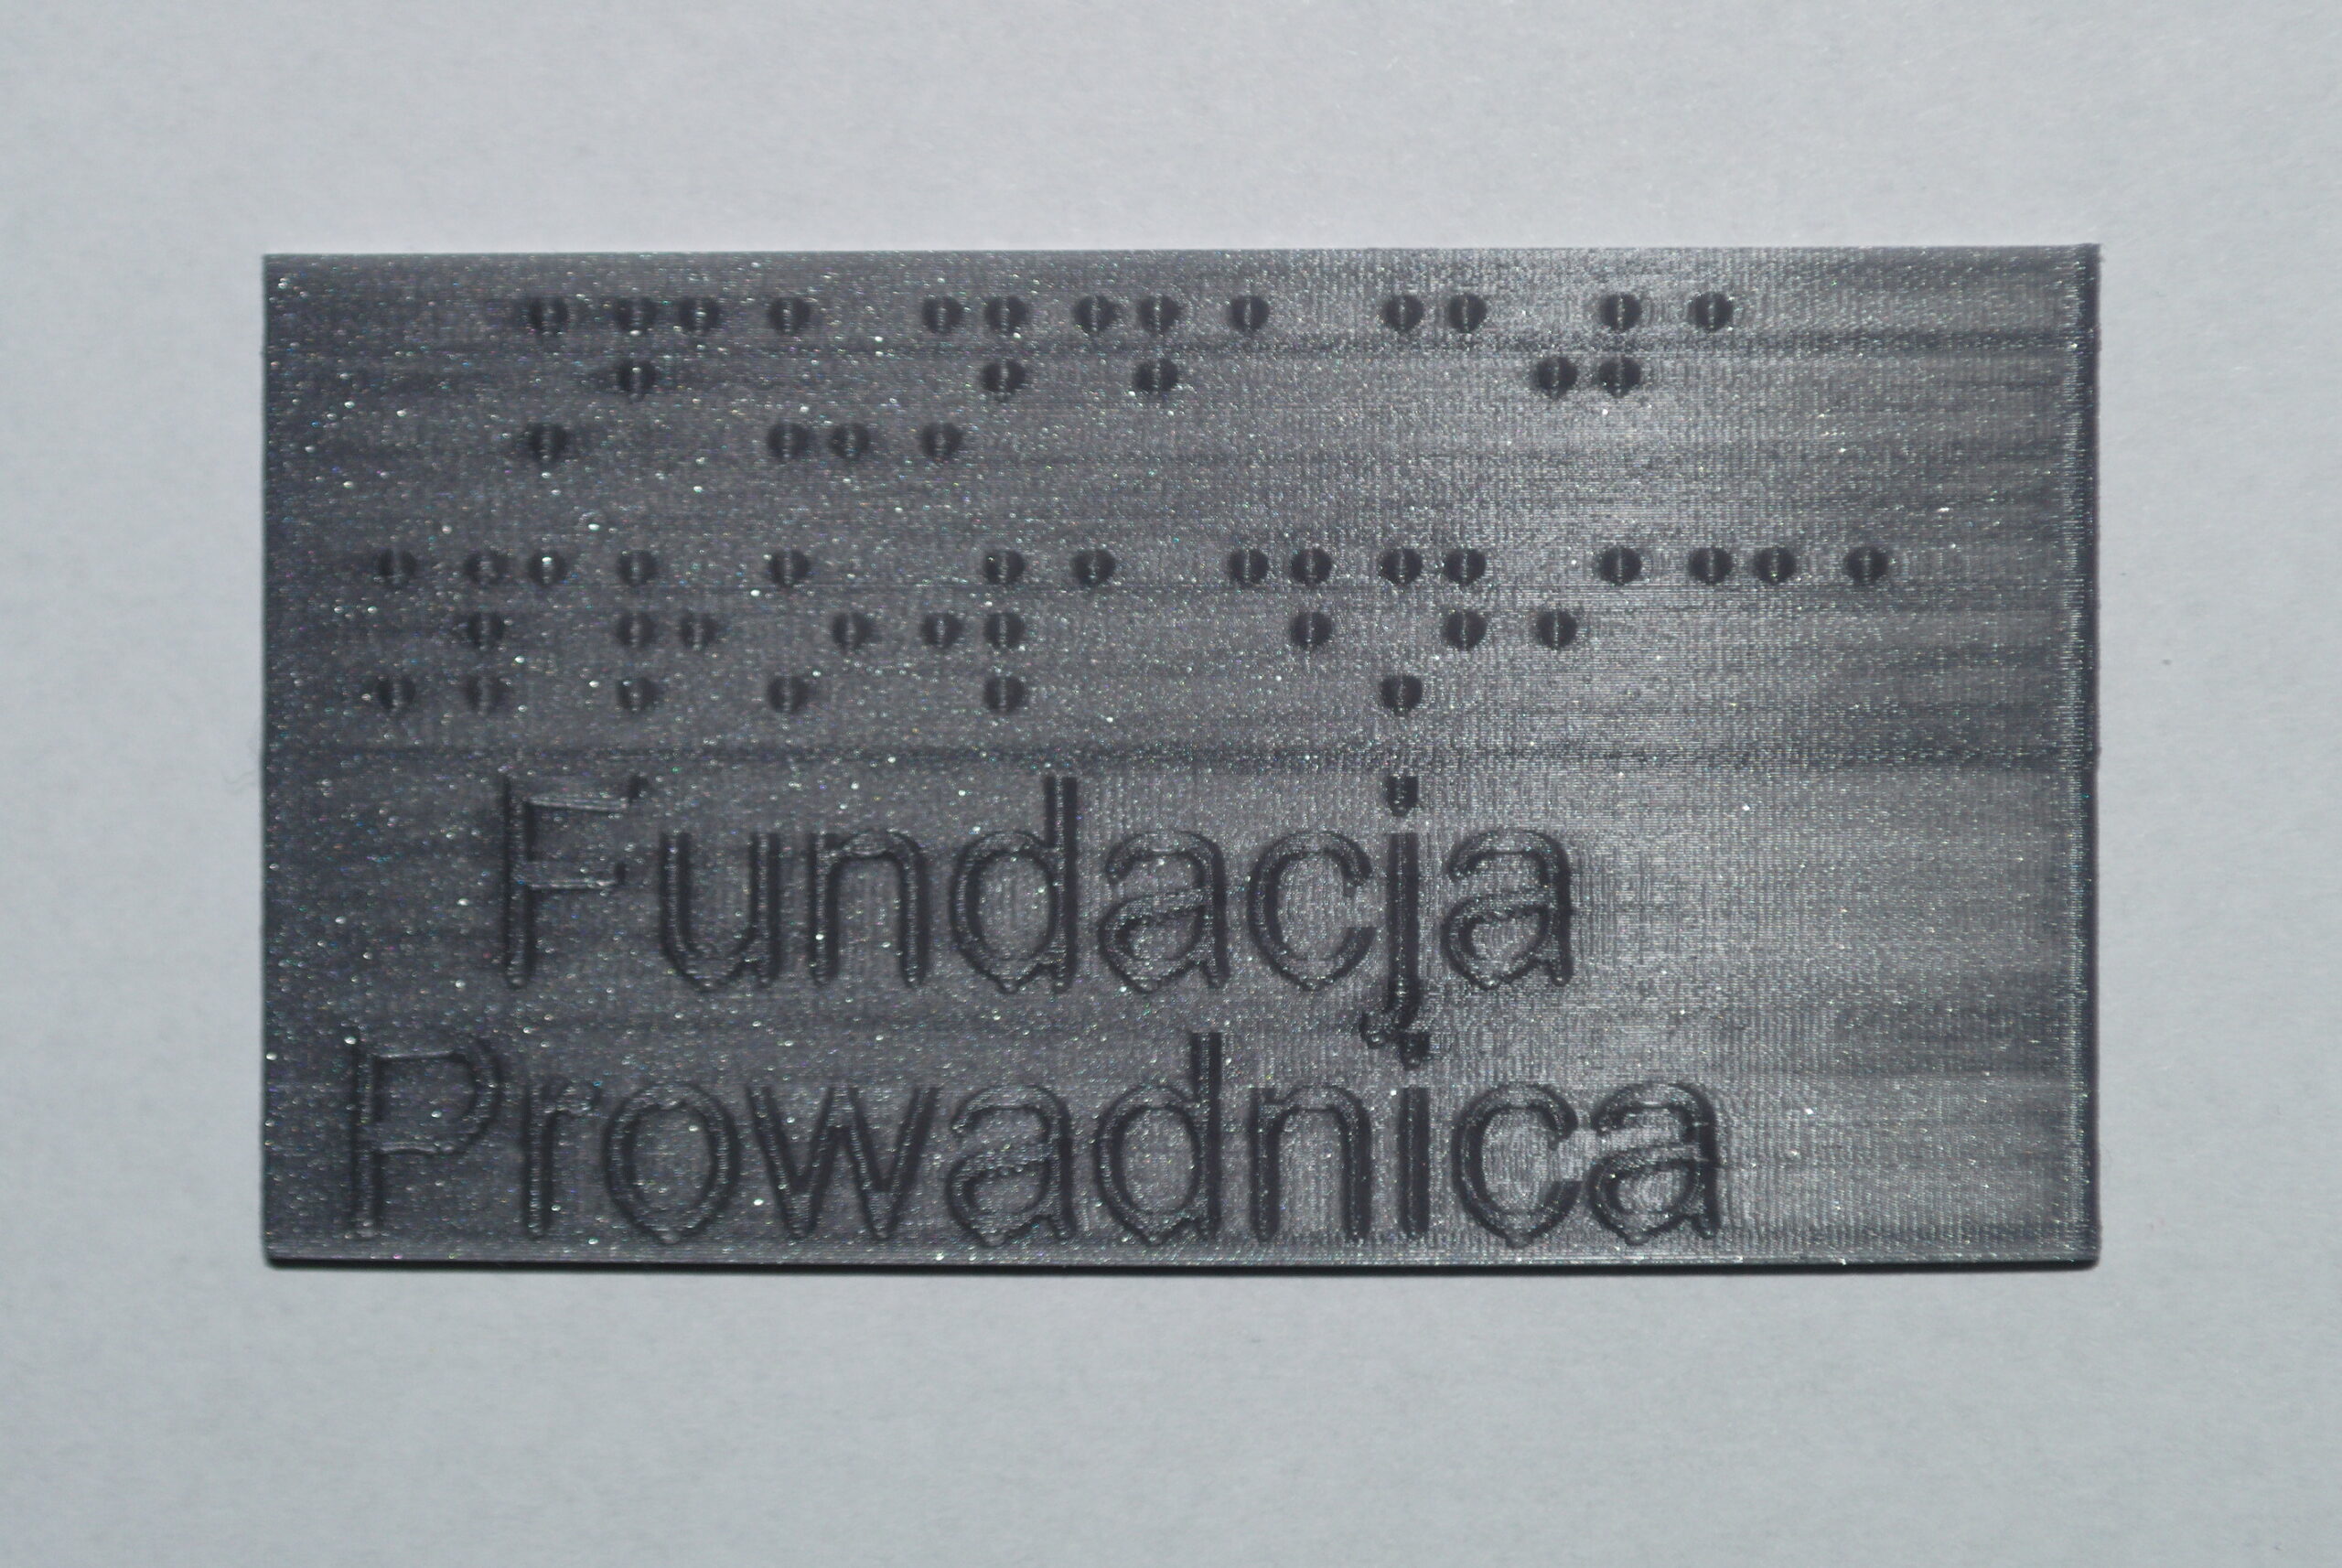 Tabliczka z szarego PLA, z brajlowskim i czarnodrukowym napisem "Fundacja Prowadnica"